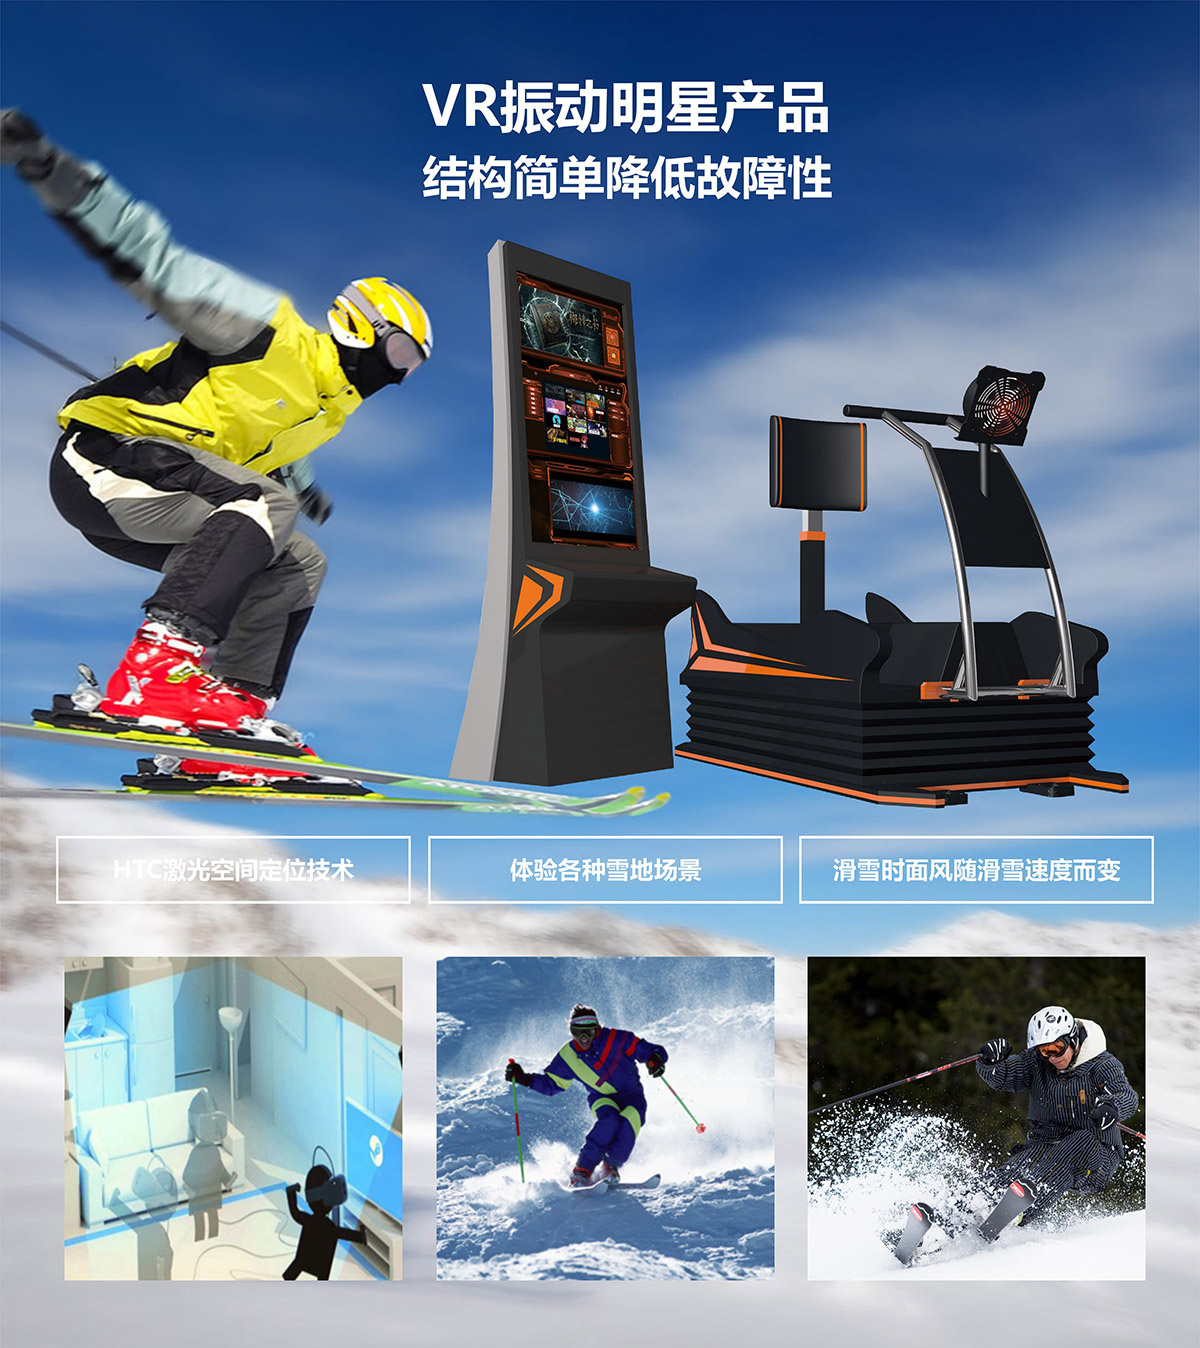 球幕影院VR明星产品模拟滑雪.jpg